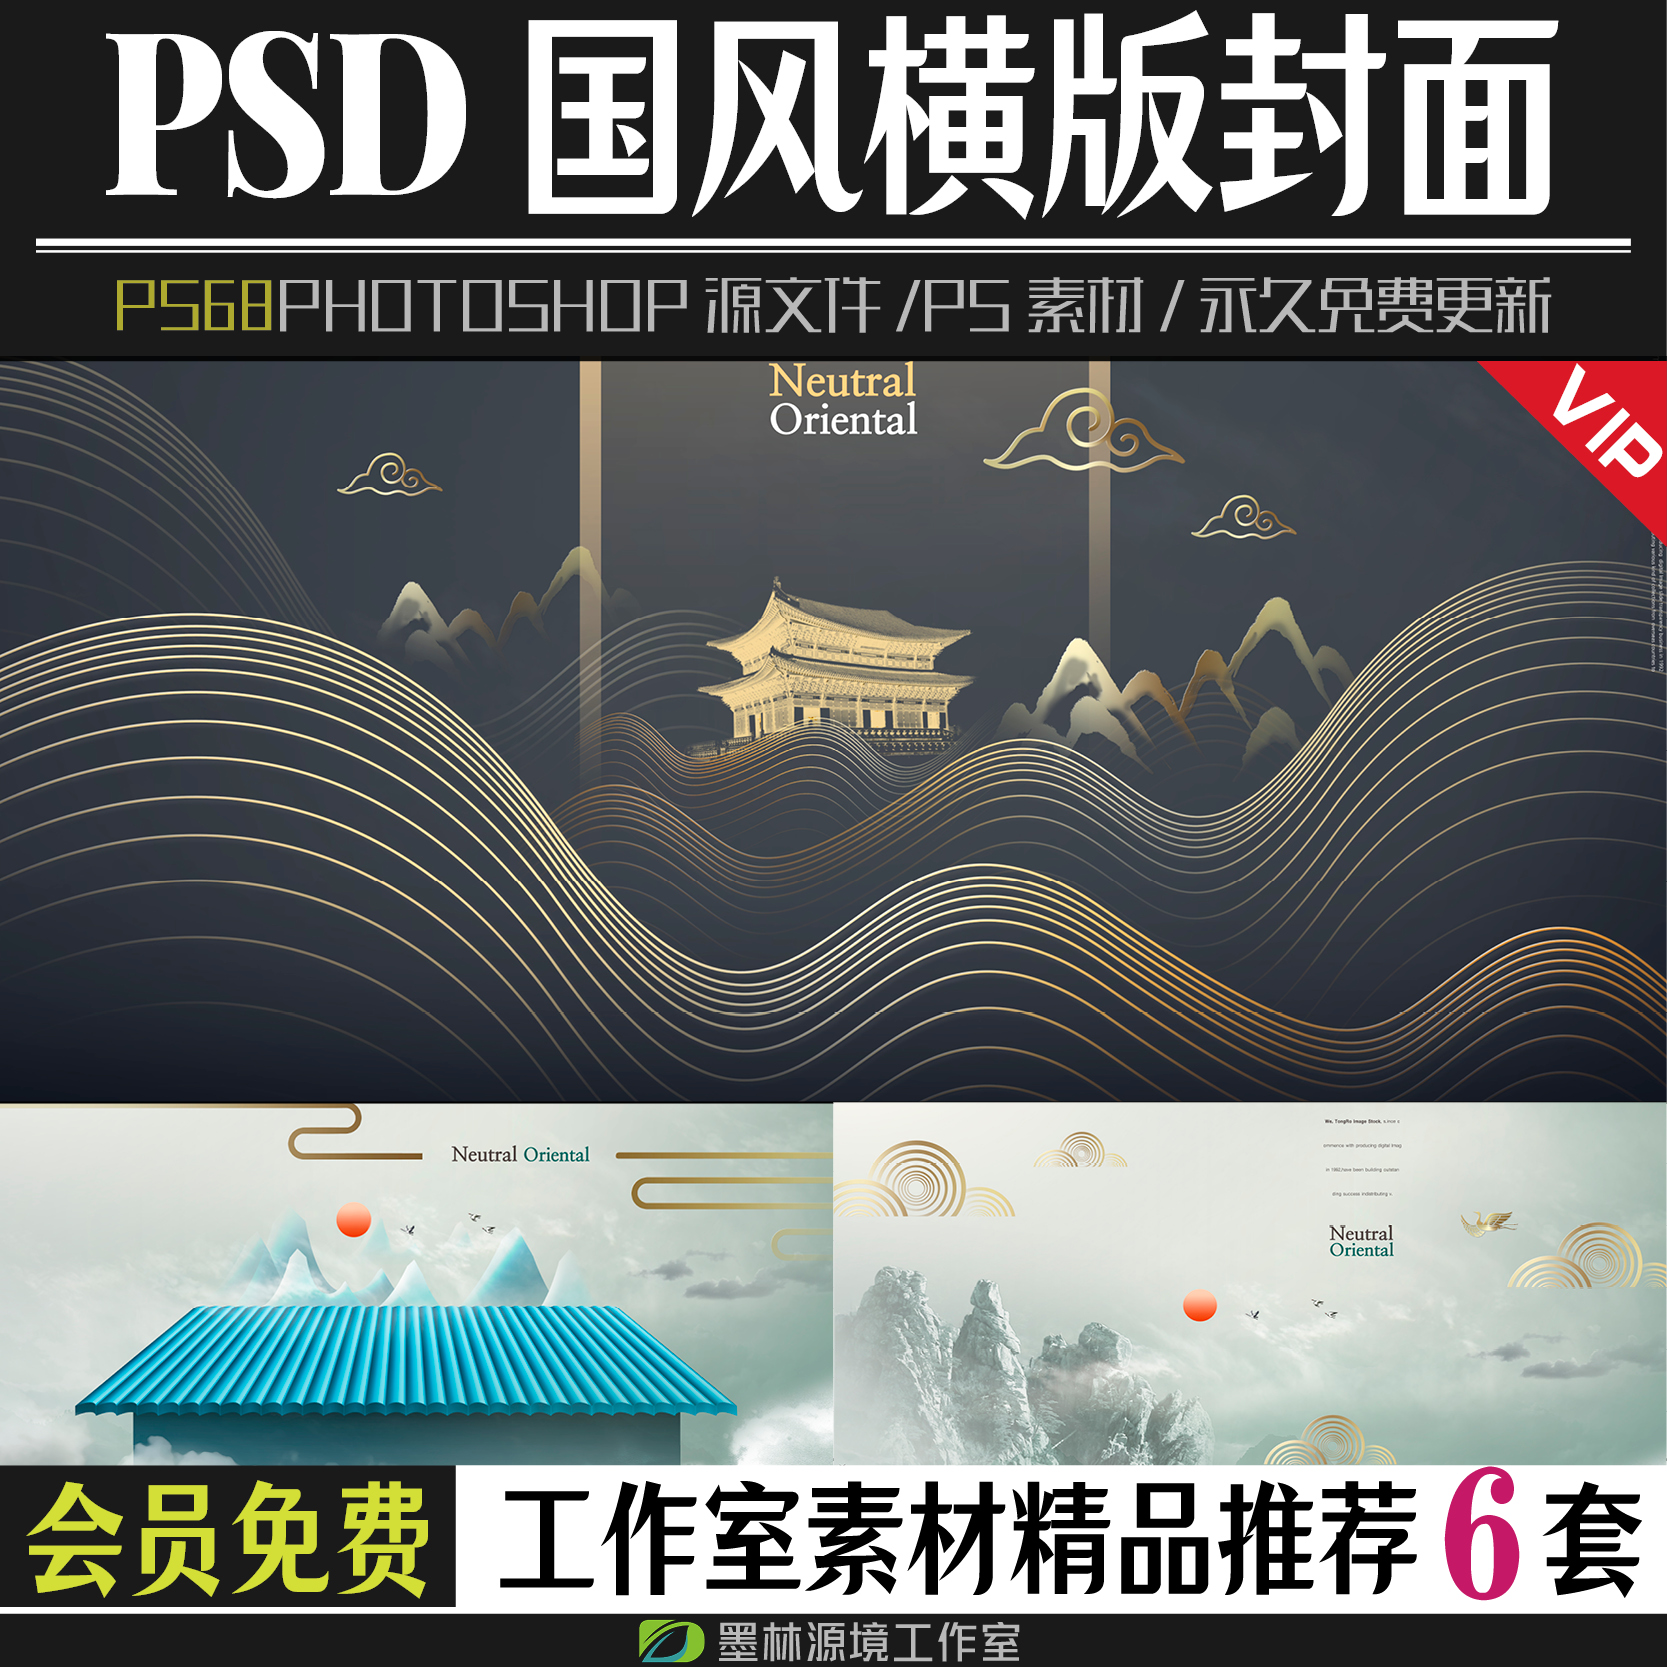 杂志广告文案古风中国风横版封面模板photoshop素材PSD源文件